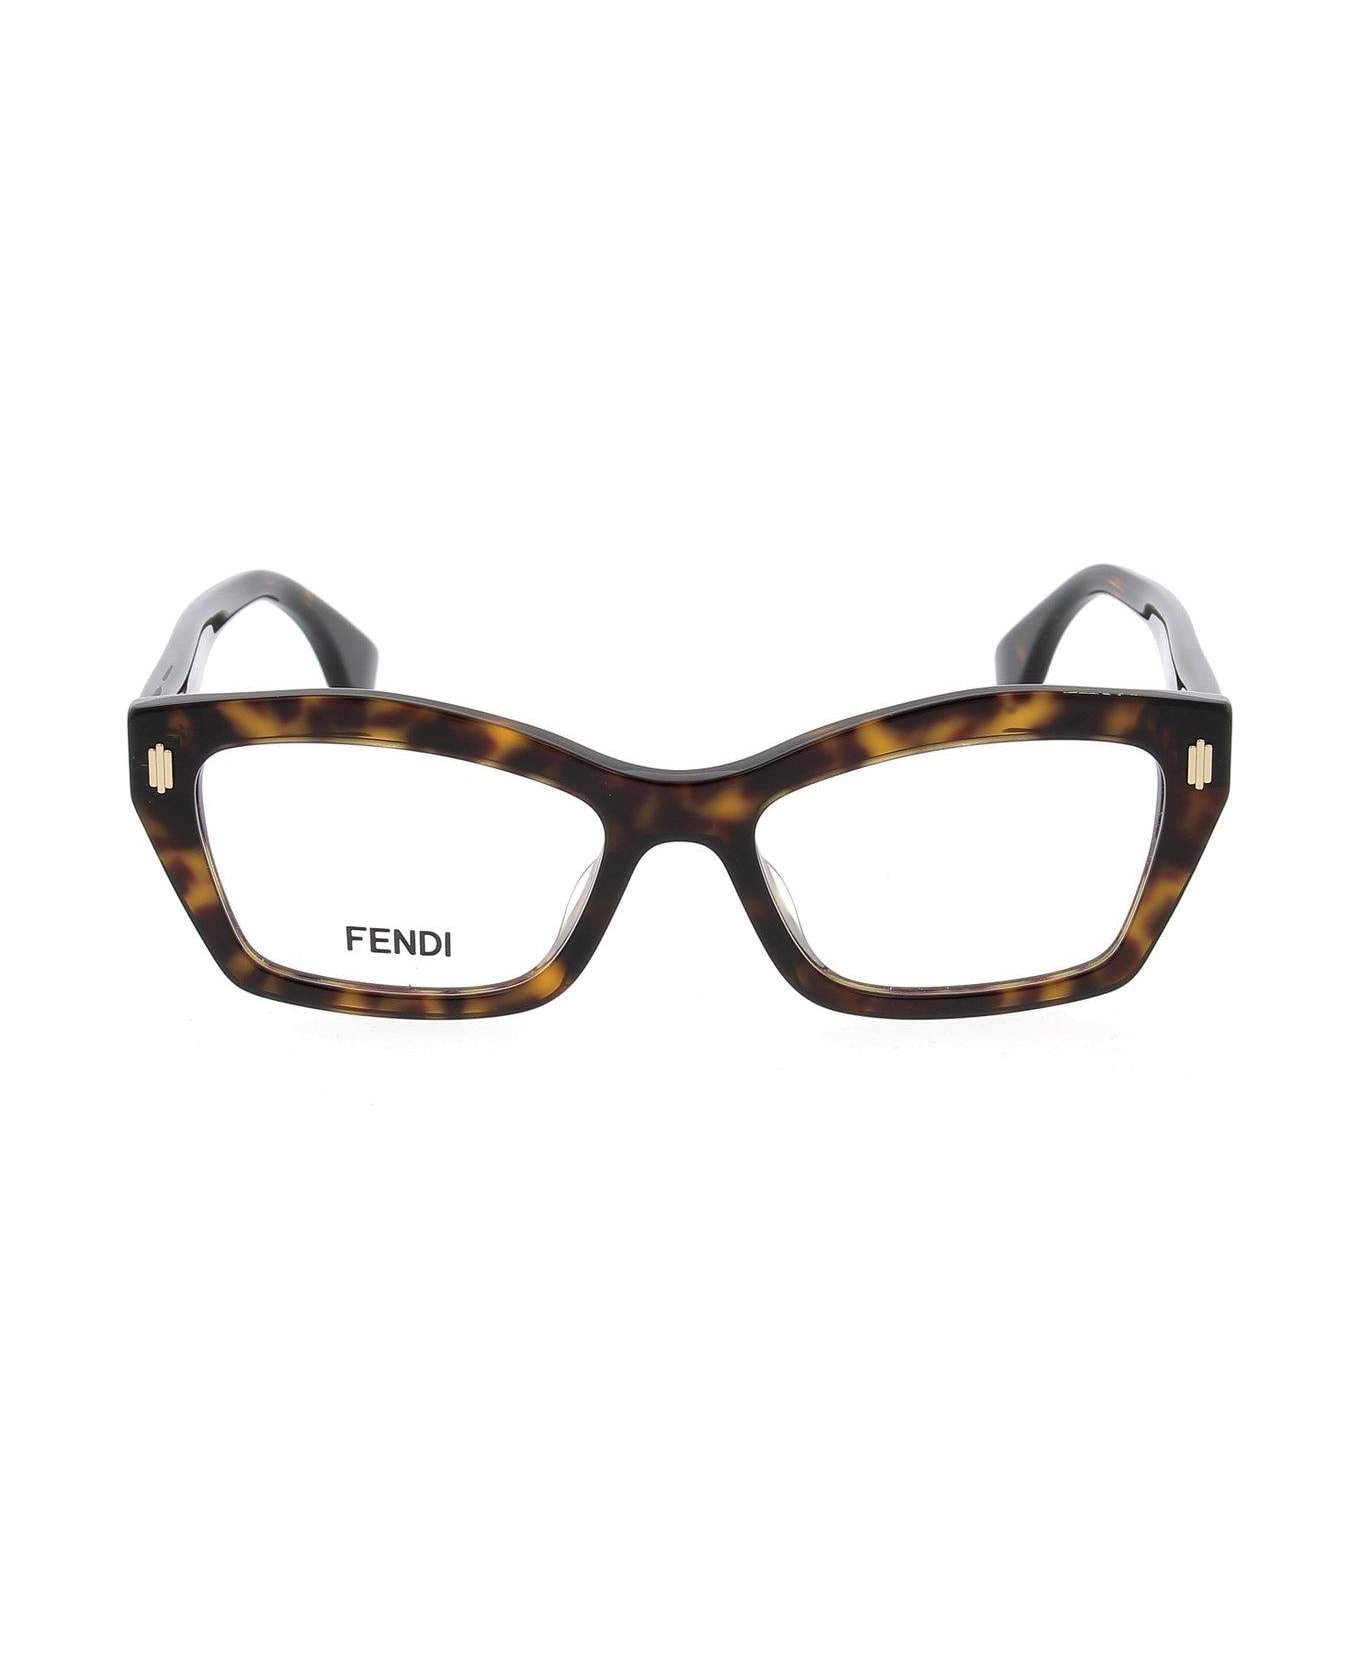 Fendi Eyewear Square Frame Glasses - 052 アイウェア